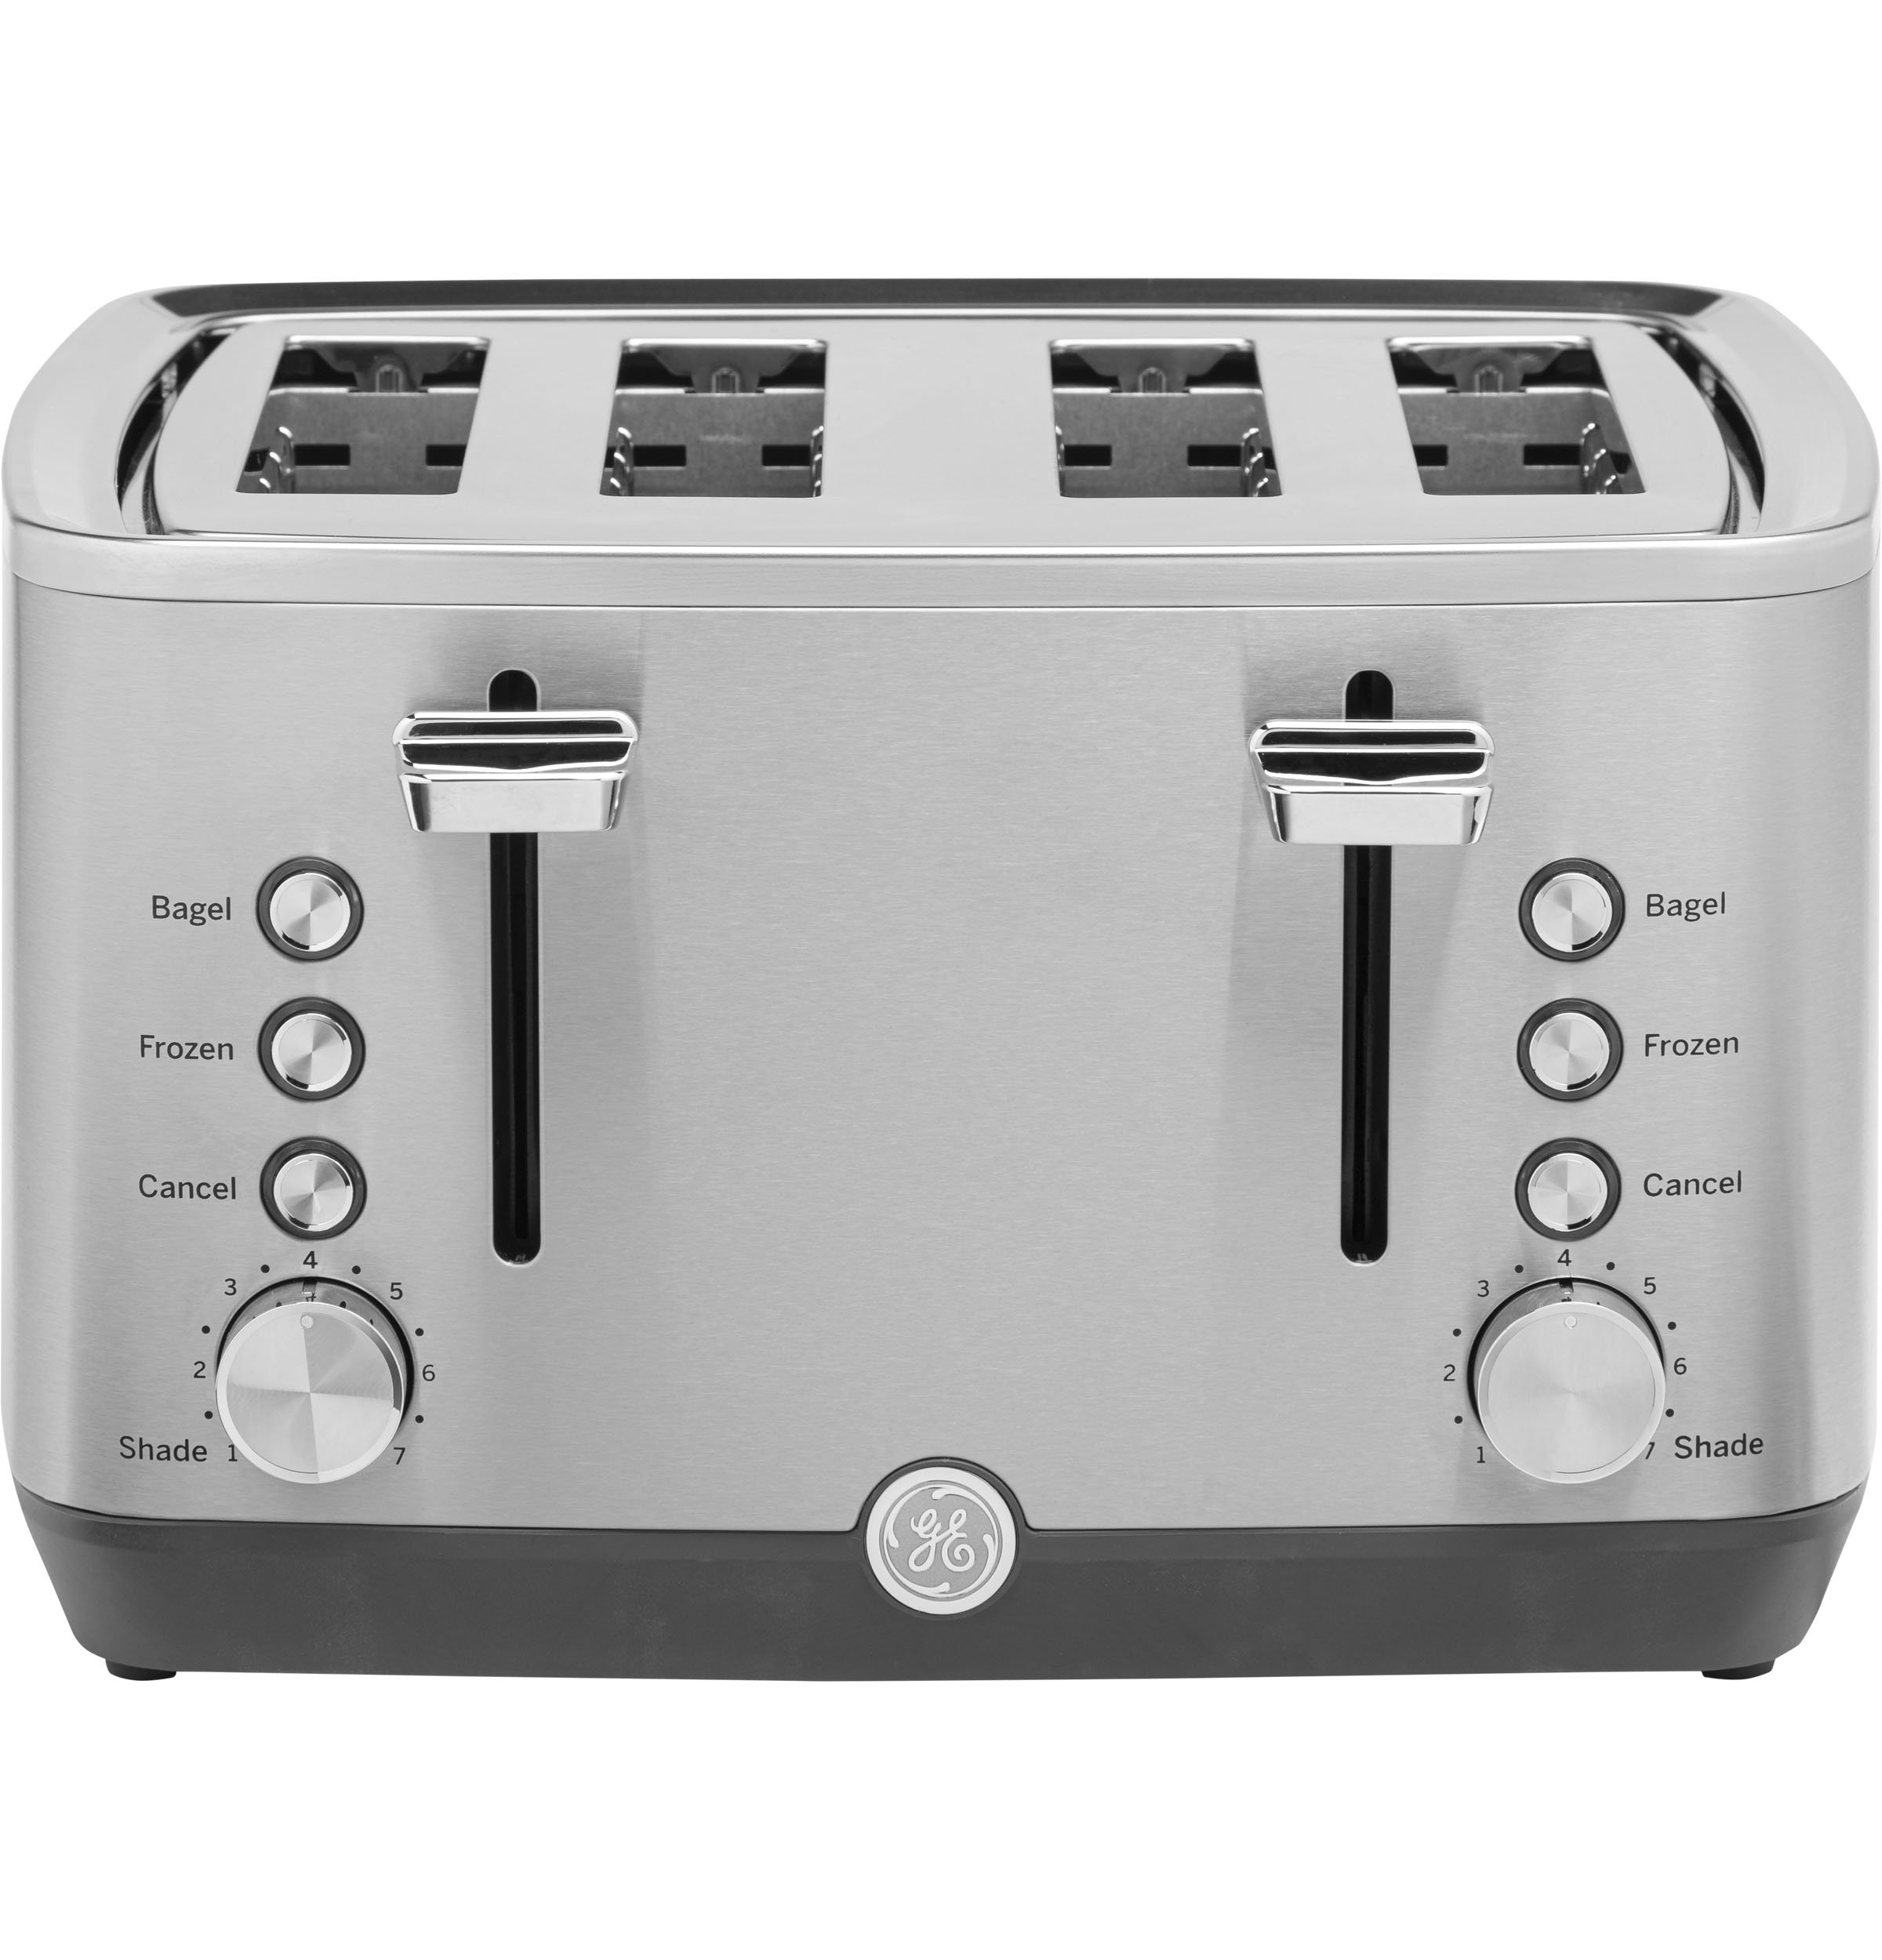 https://assets.wfcdn.com/im/71124189/compr-r85/1351/135111539/ge-4-slice-toaster.jpg